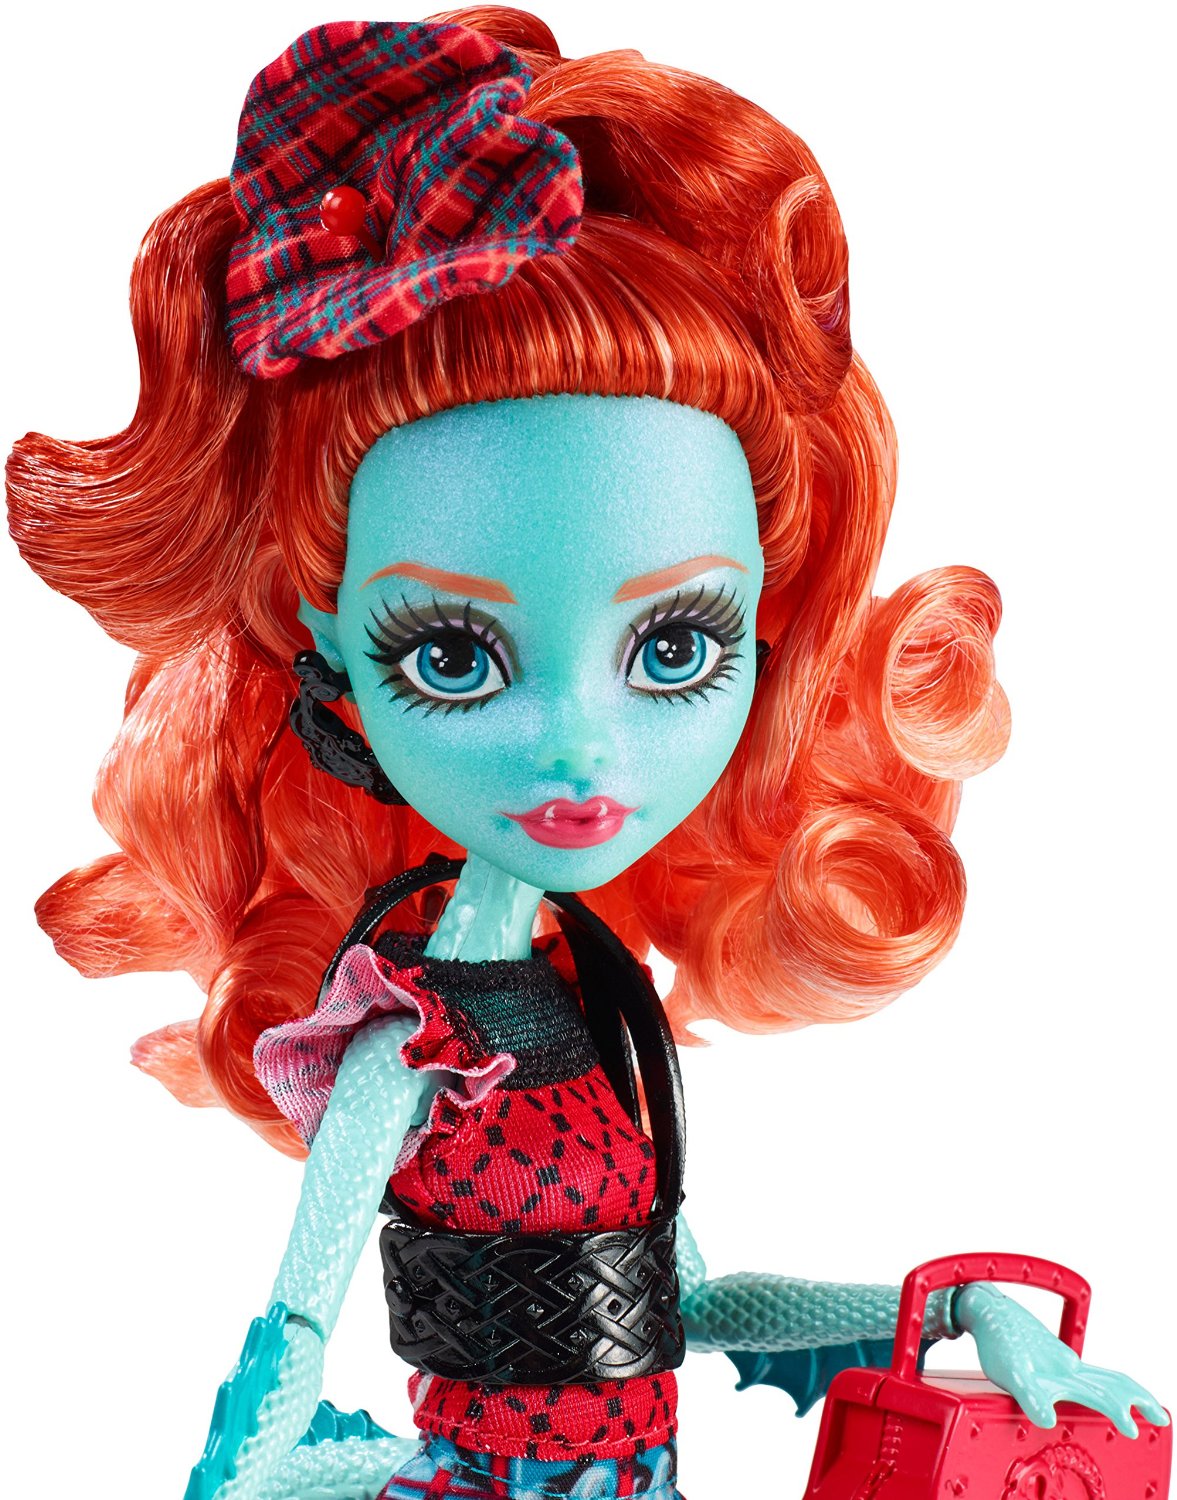 Кукла из серии Monster High Монстры по обмену - Лорна МакНесси  